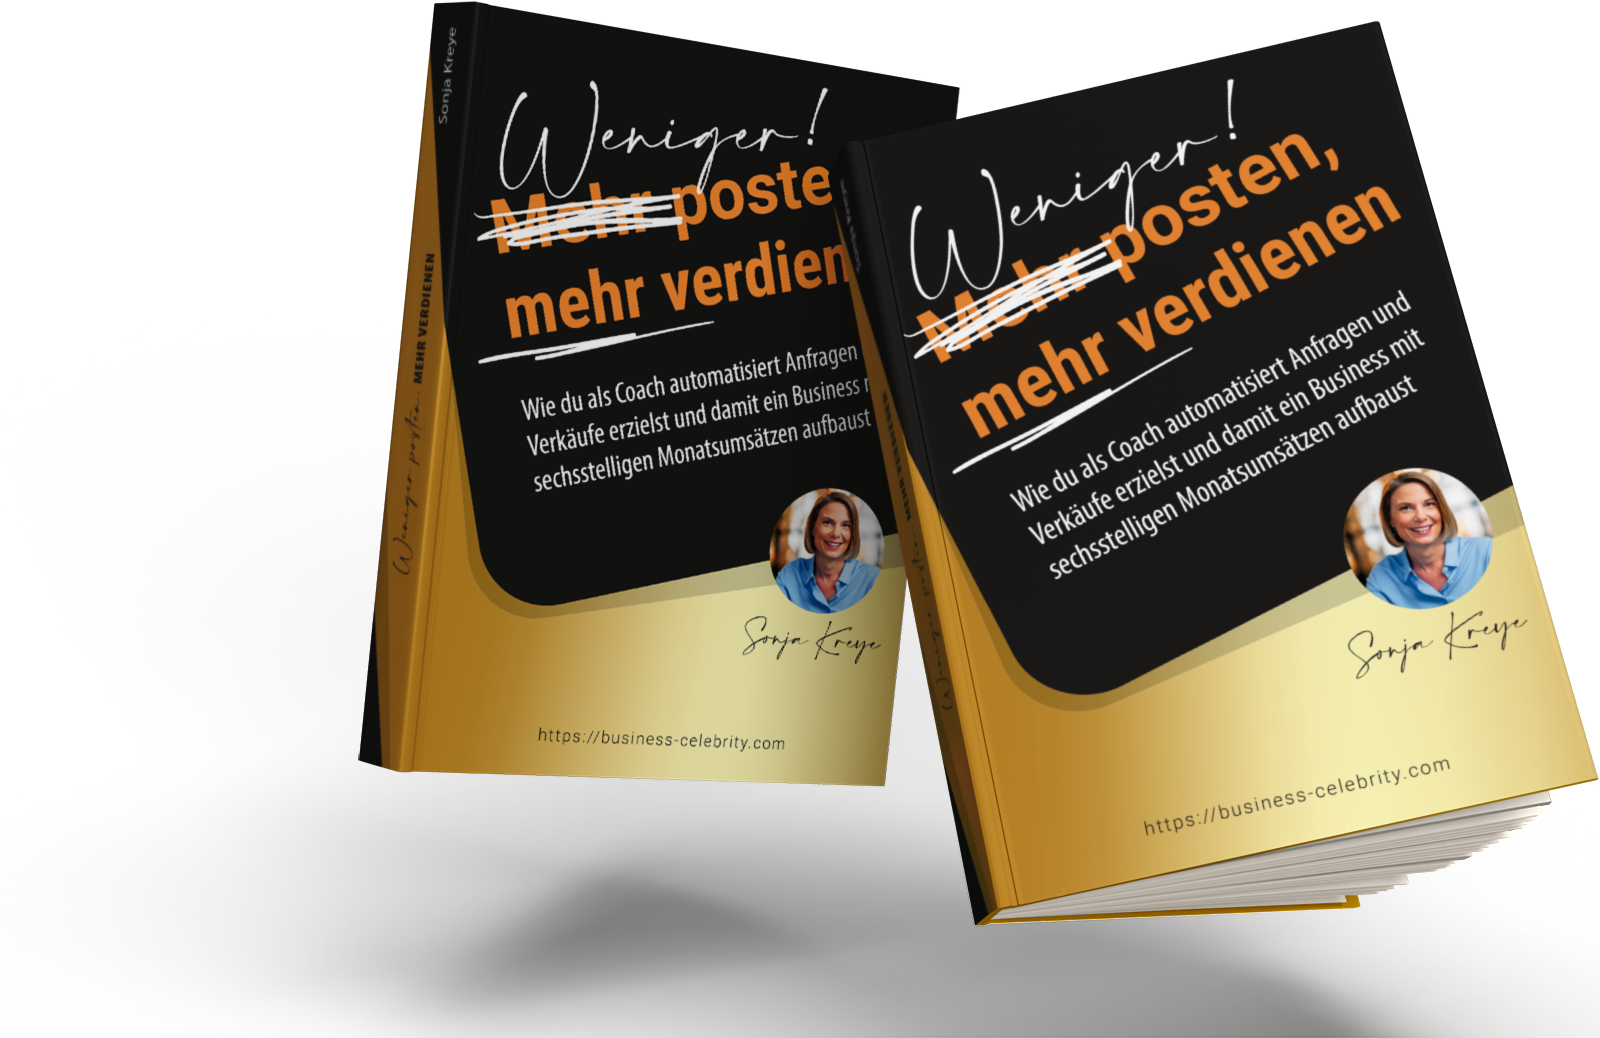 Sonja Kreye Buch Weniger posten mehr verdienen im Online-Coaching-Business